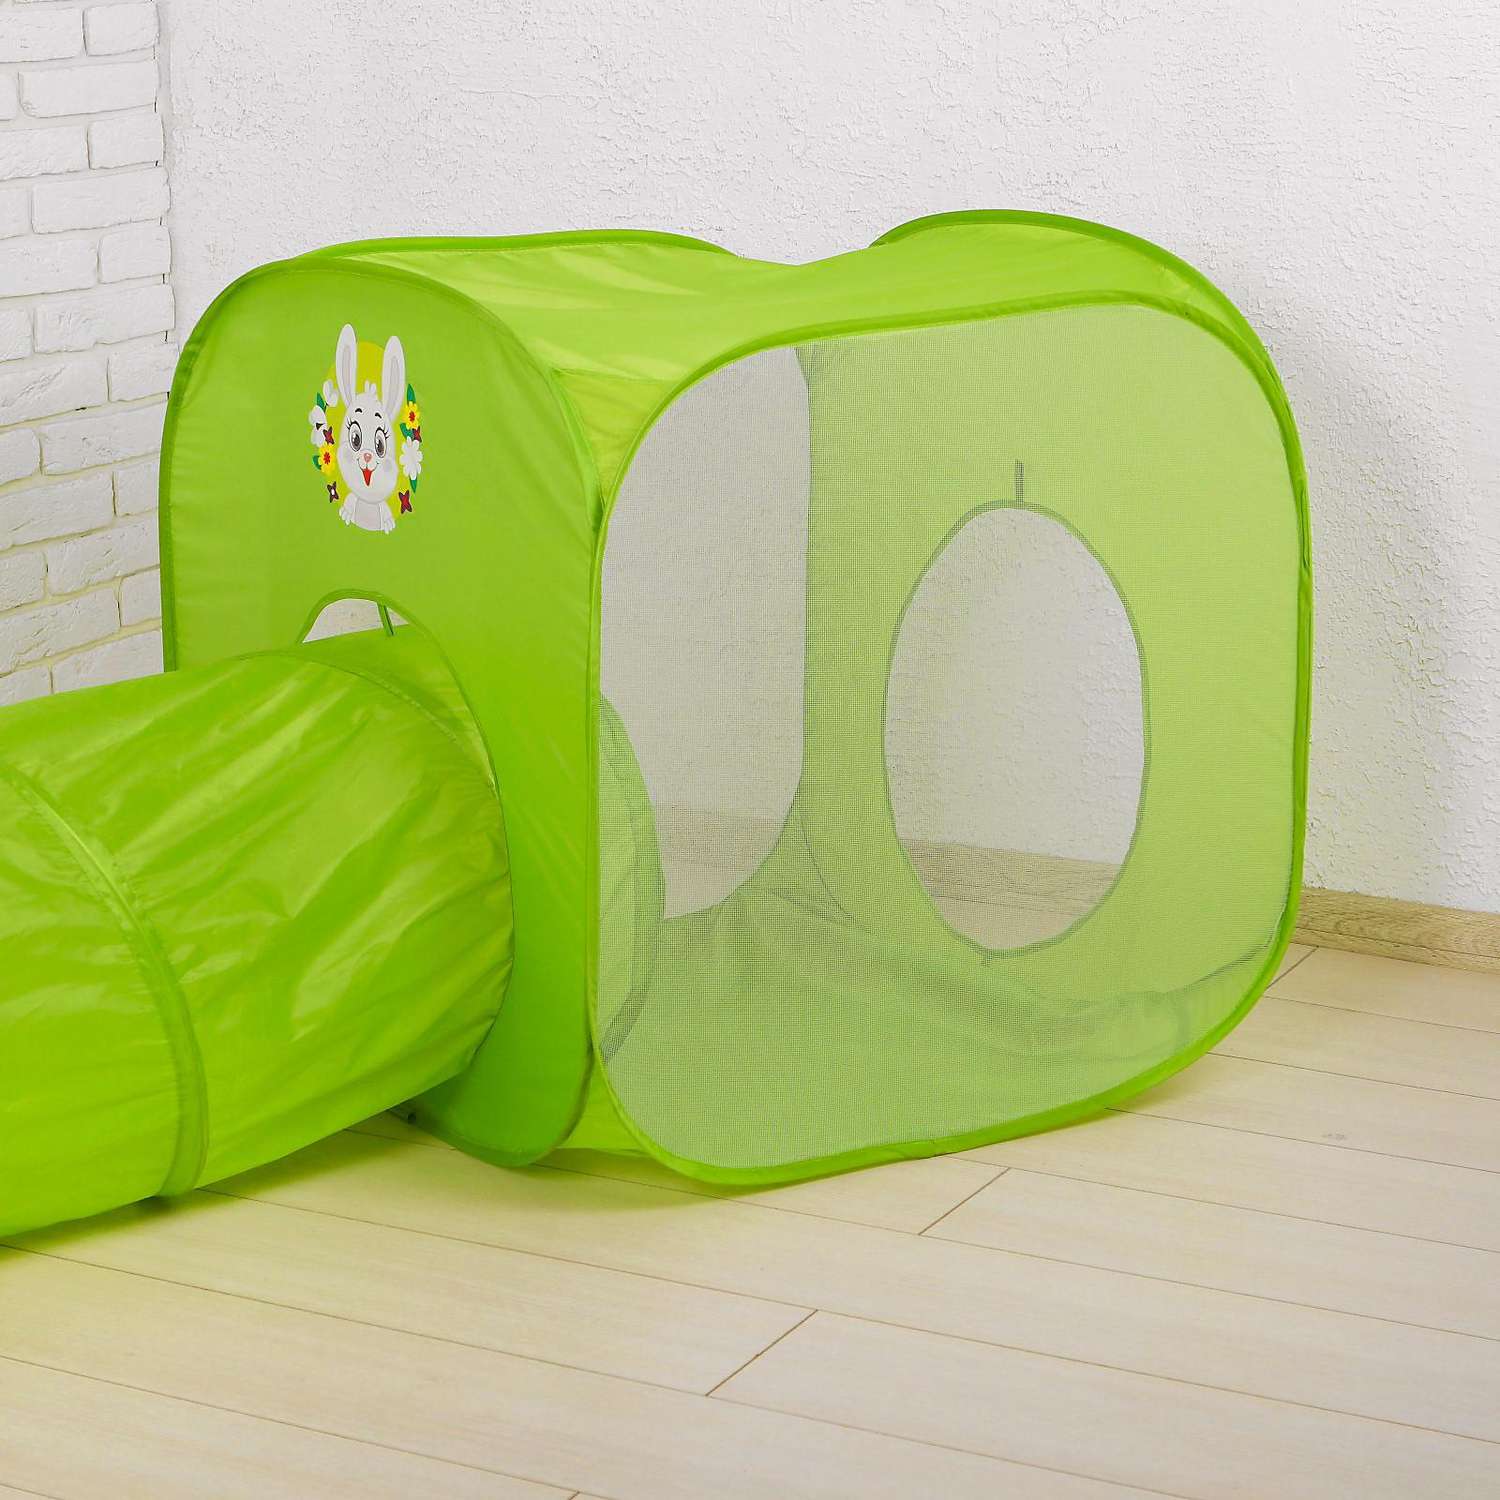 Игровая палатка Школа Талантов Давай играть с туннелем цвет зеленый - фото 2